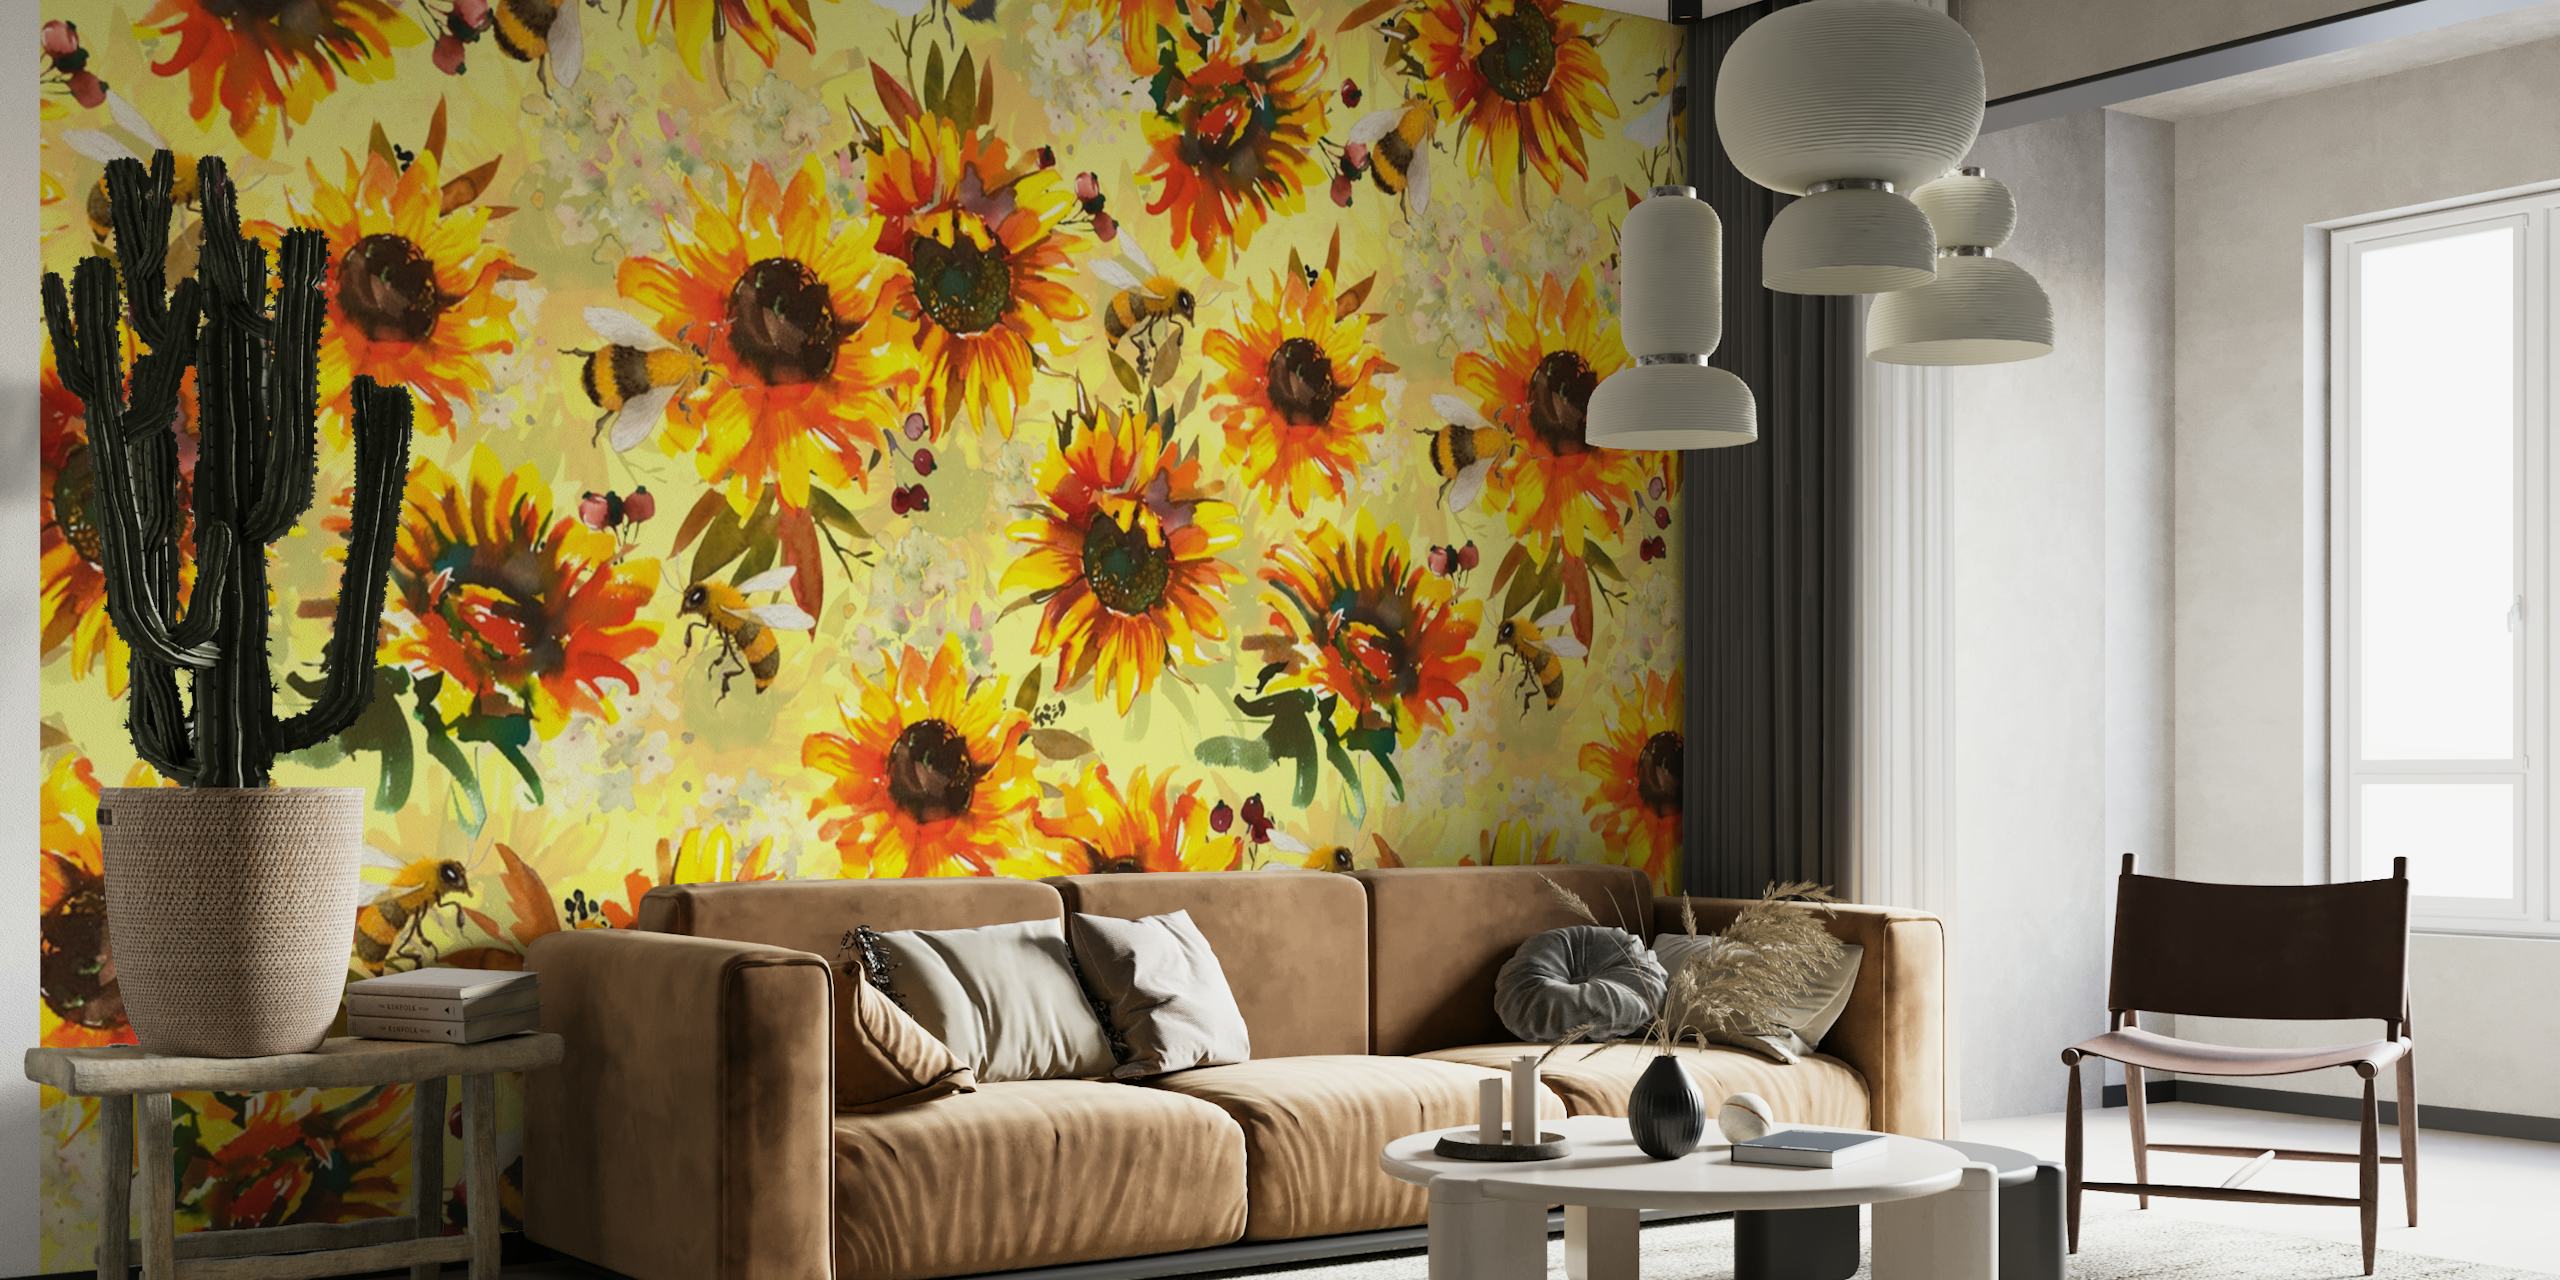 Auringonkukat ja mehiläiset kuvio seinämaalauksessa, jossa on kirkas, kesäinen tunnelma.